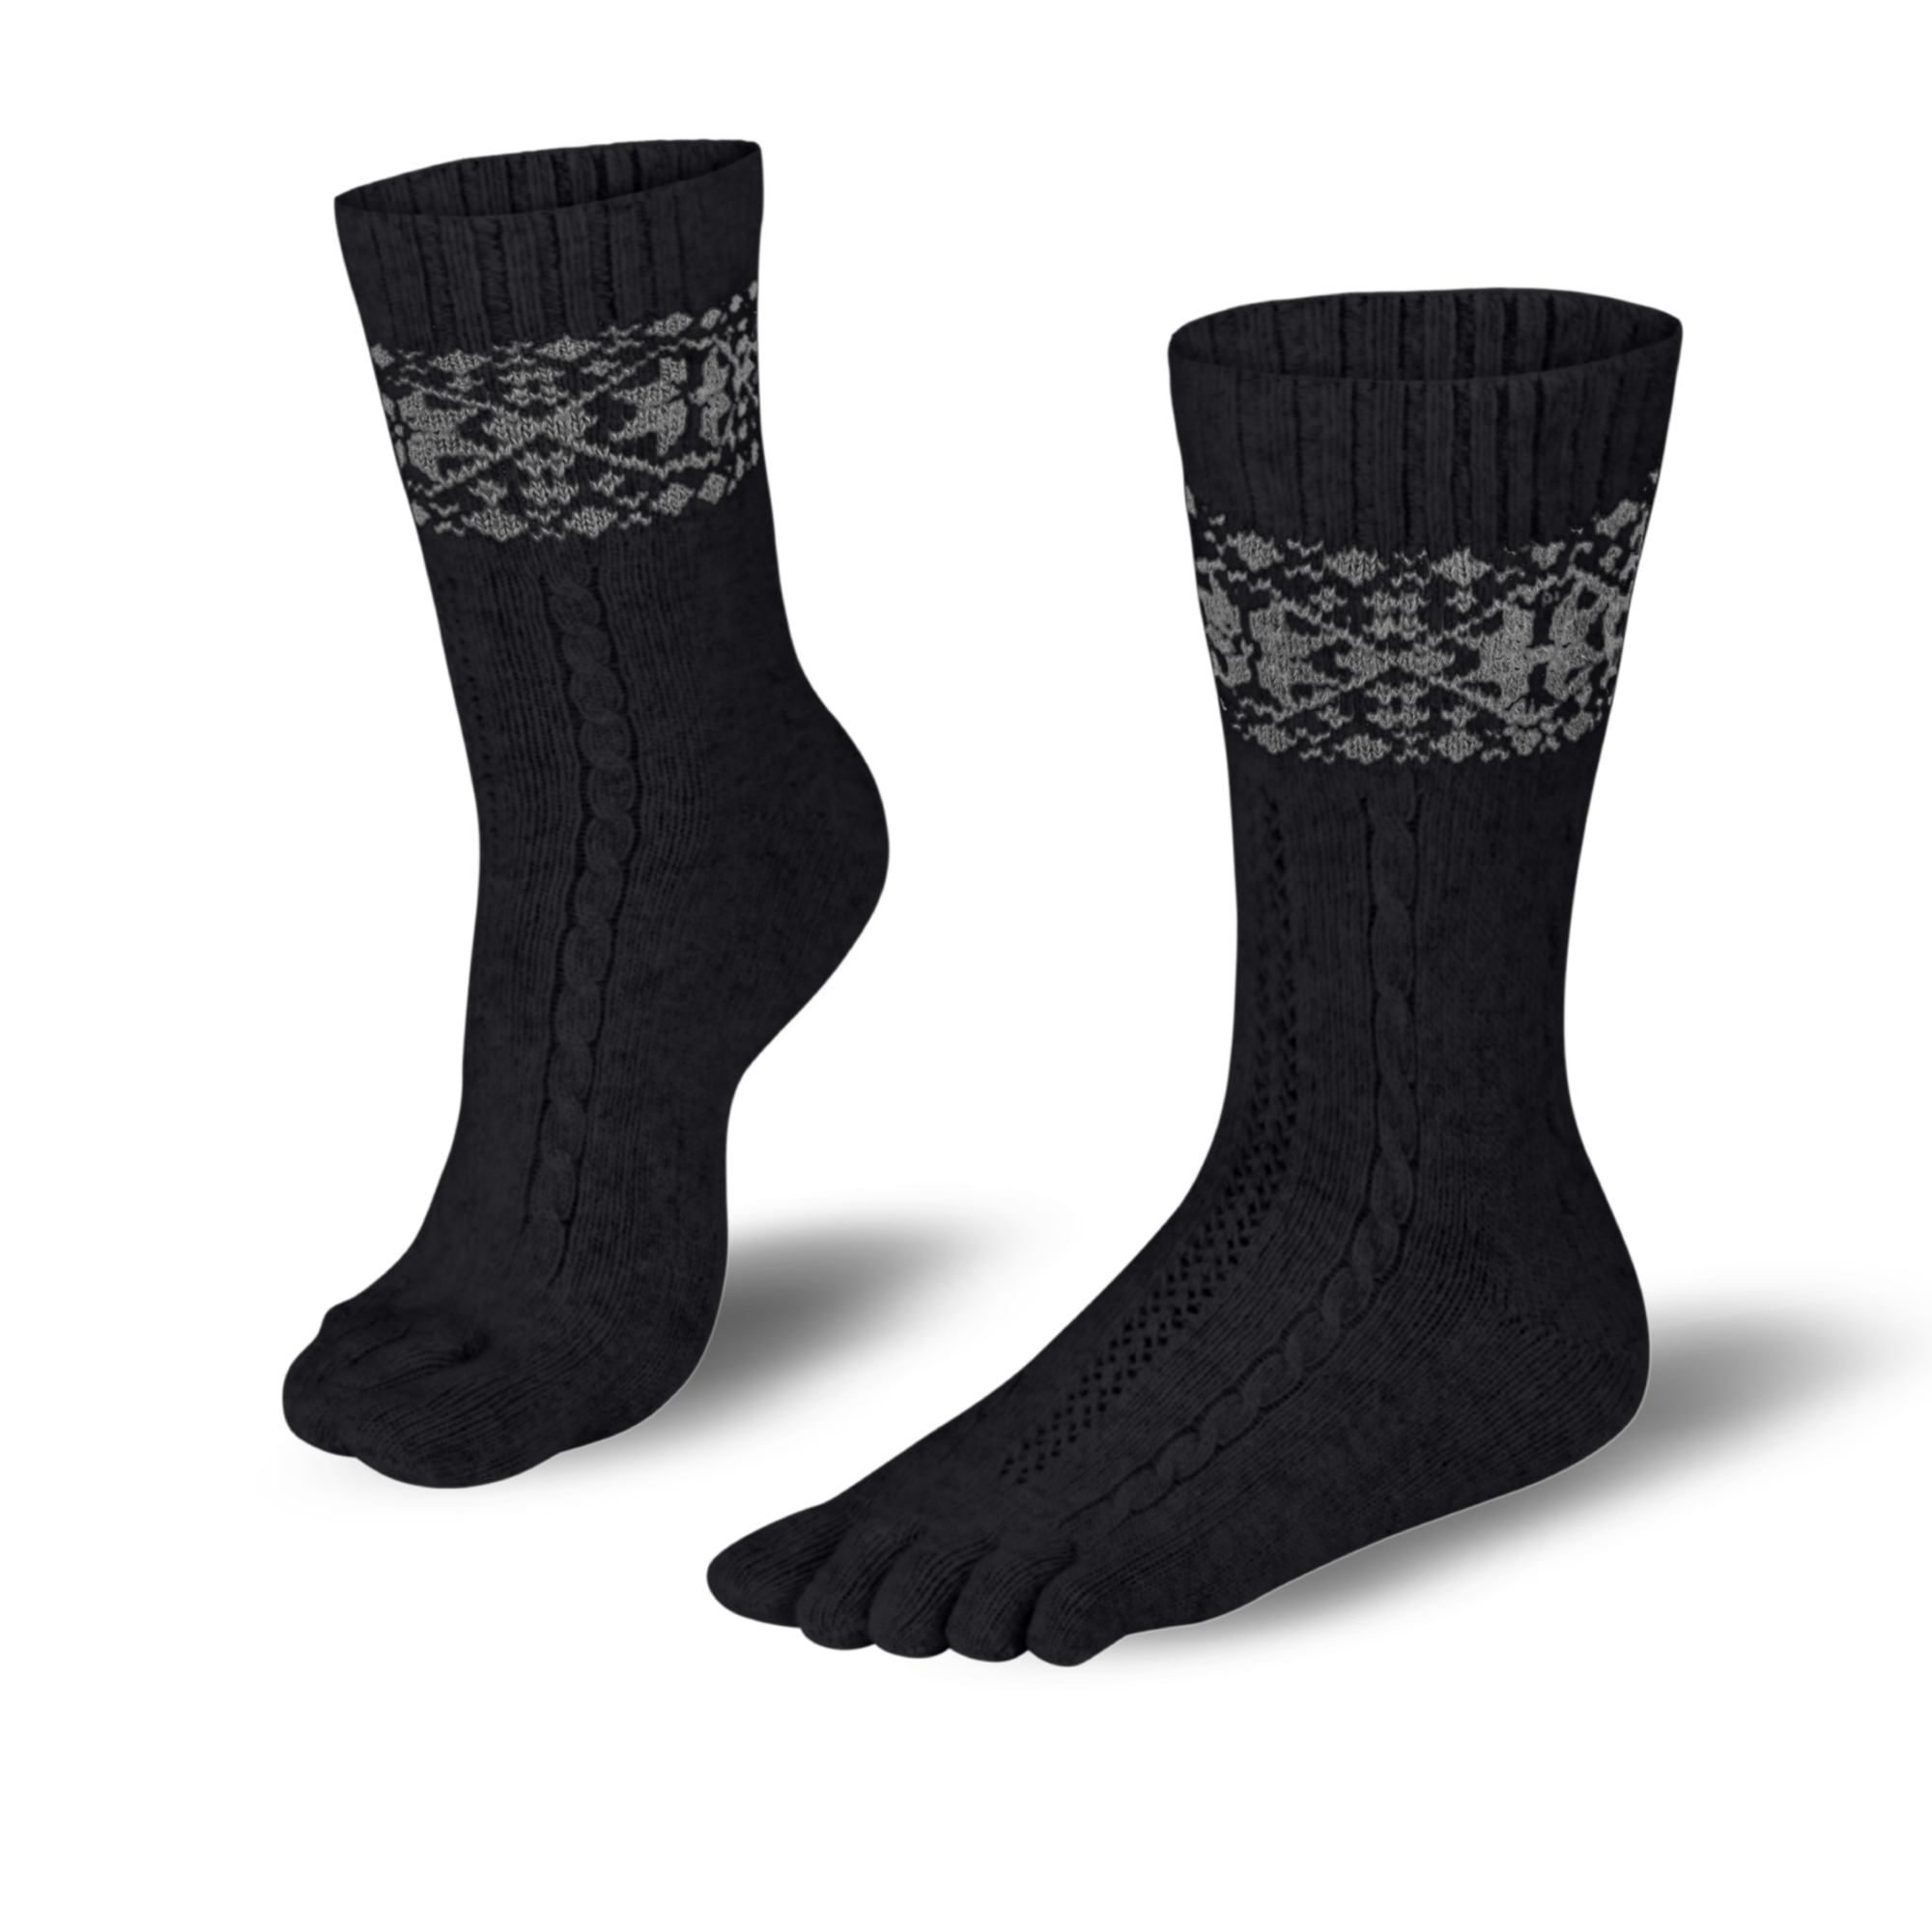  Knitido calcetines de merino y cachemir con estampado de parches de nieve en negro/gris